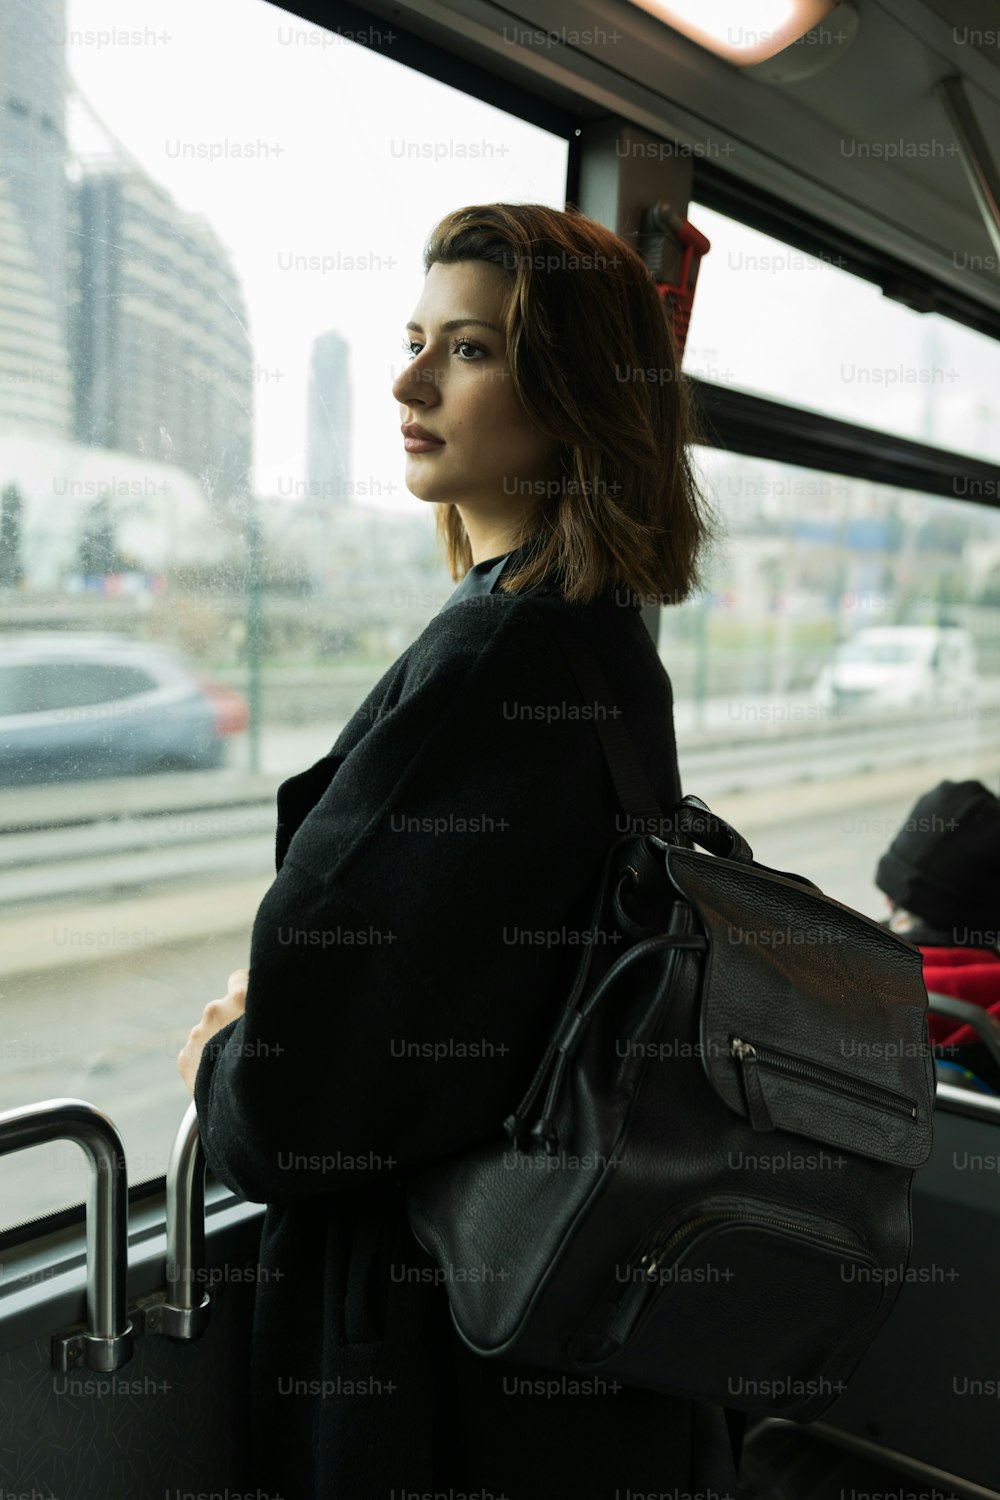 バスの上に立って窓の外を眺める女性